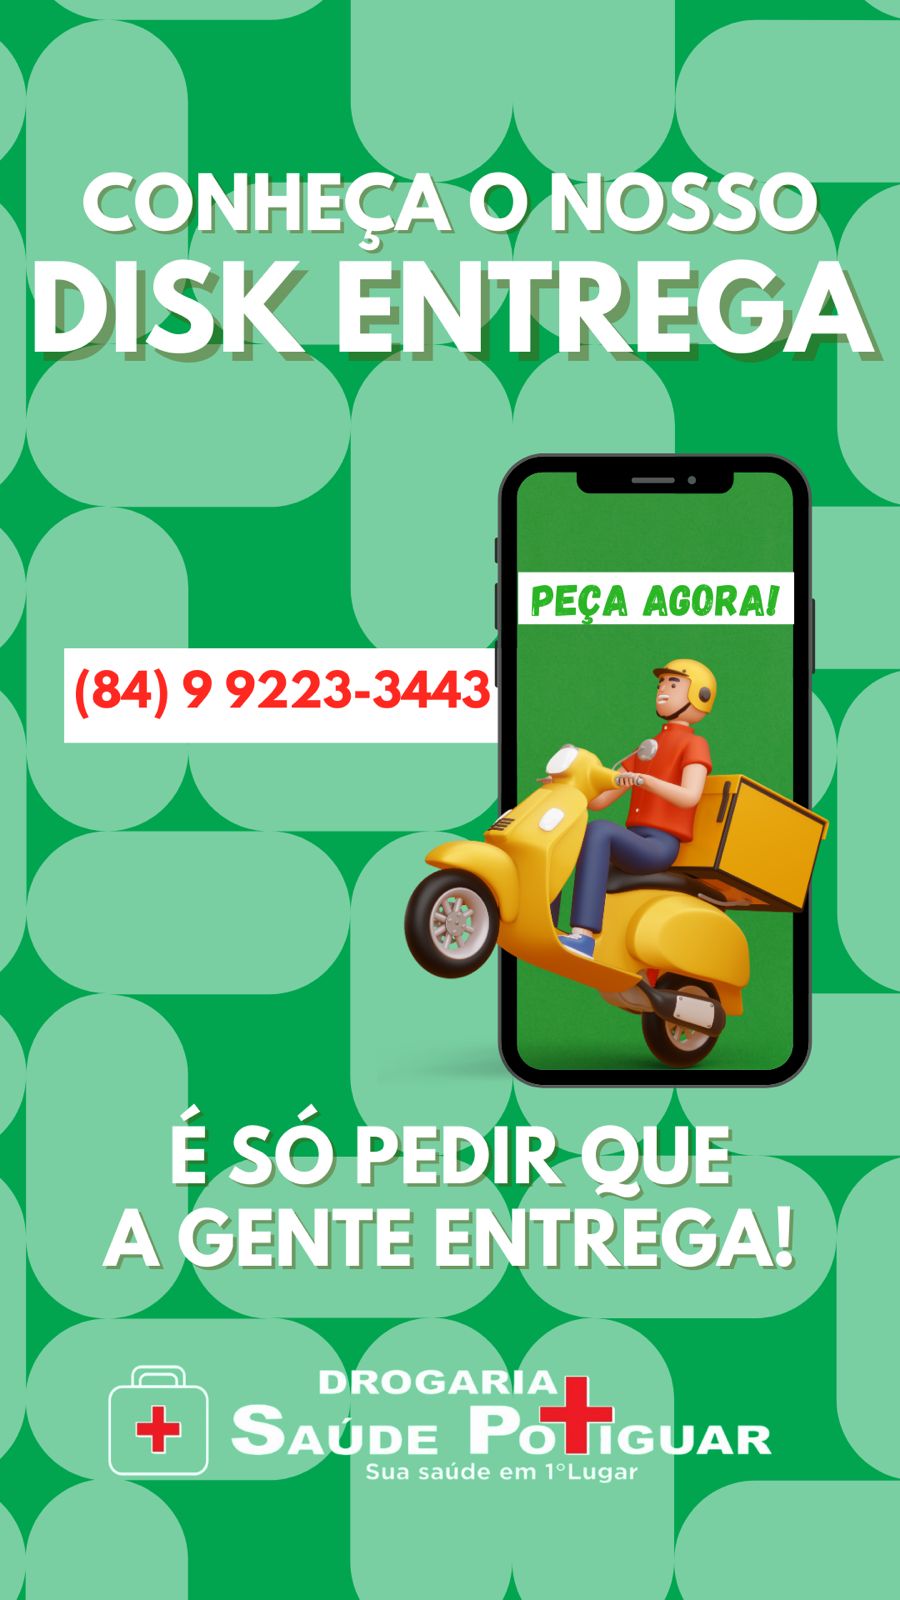 Imagem de uma oferta oferecida pela empresa Drogaria Saúde Potiguar